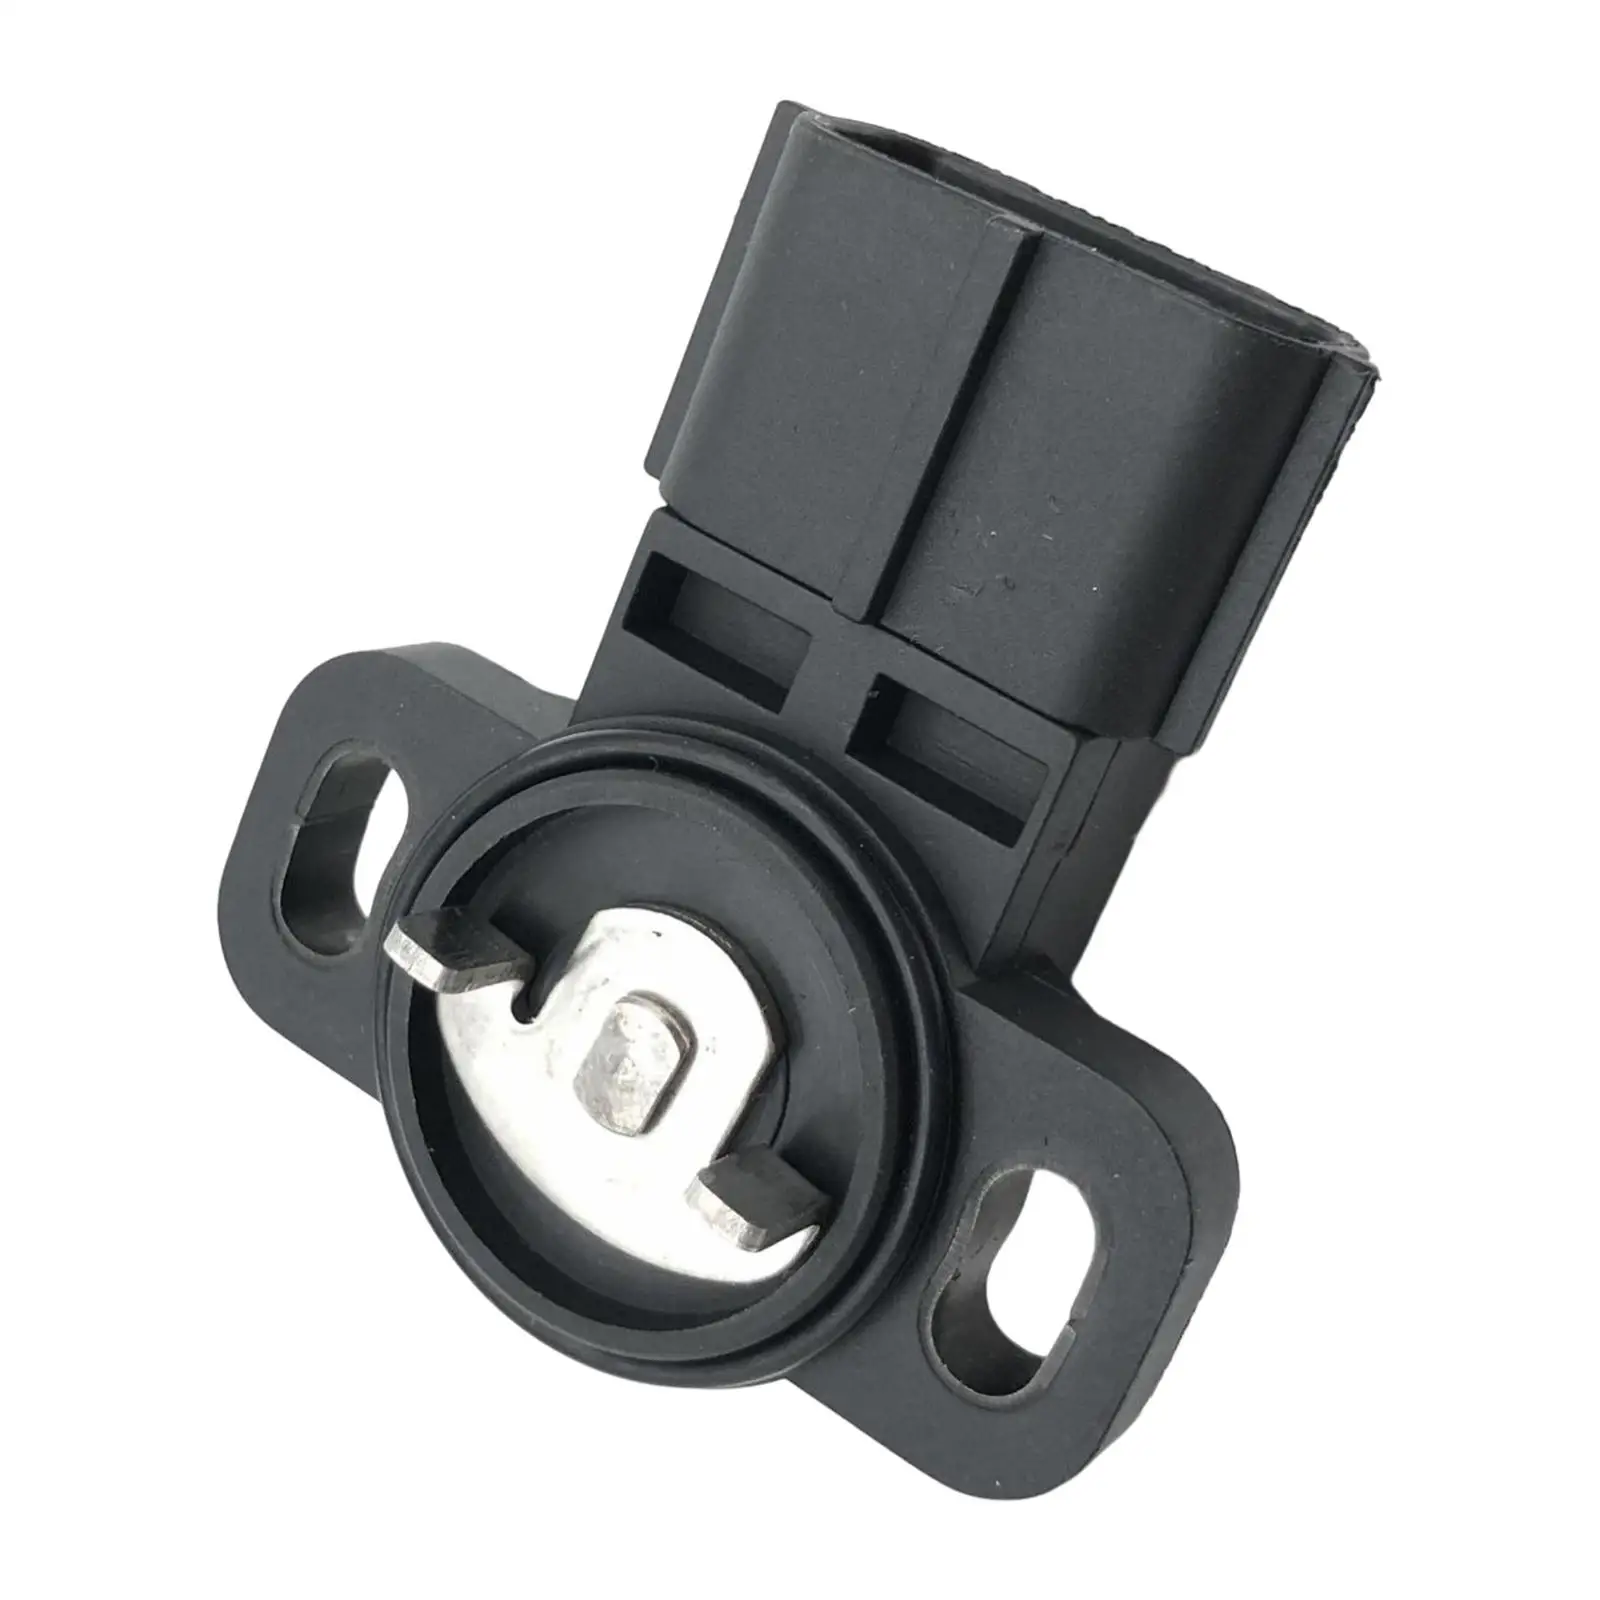 Automotive Throttle Position Sensor 35102-39000 3510239000 35102-33100 Tps for Kia 3.5L V6 Replacement Durable